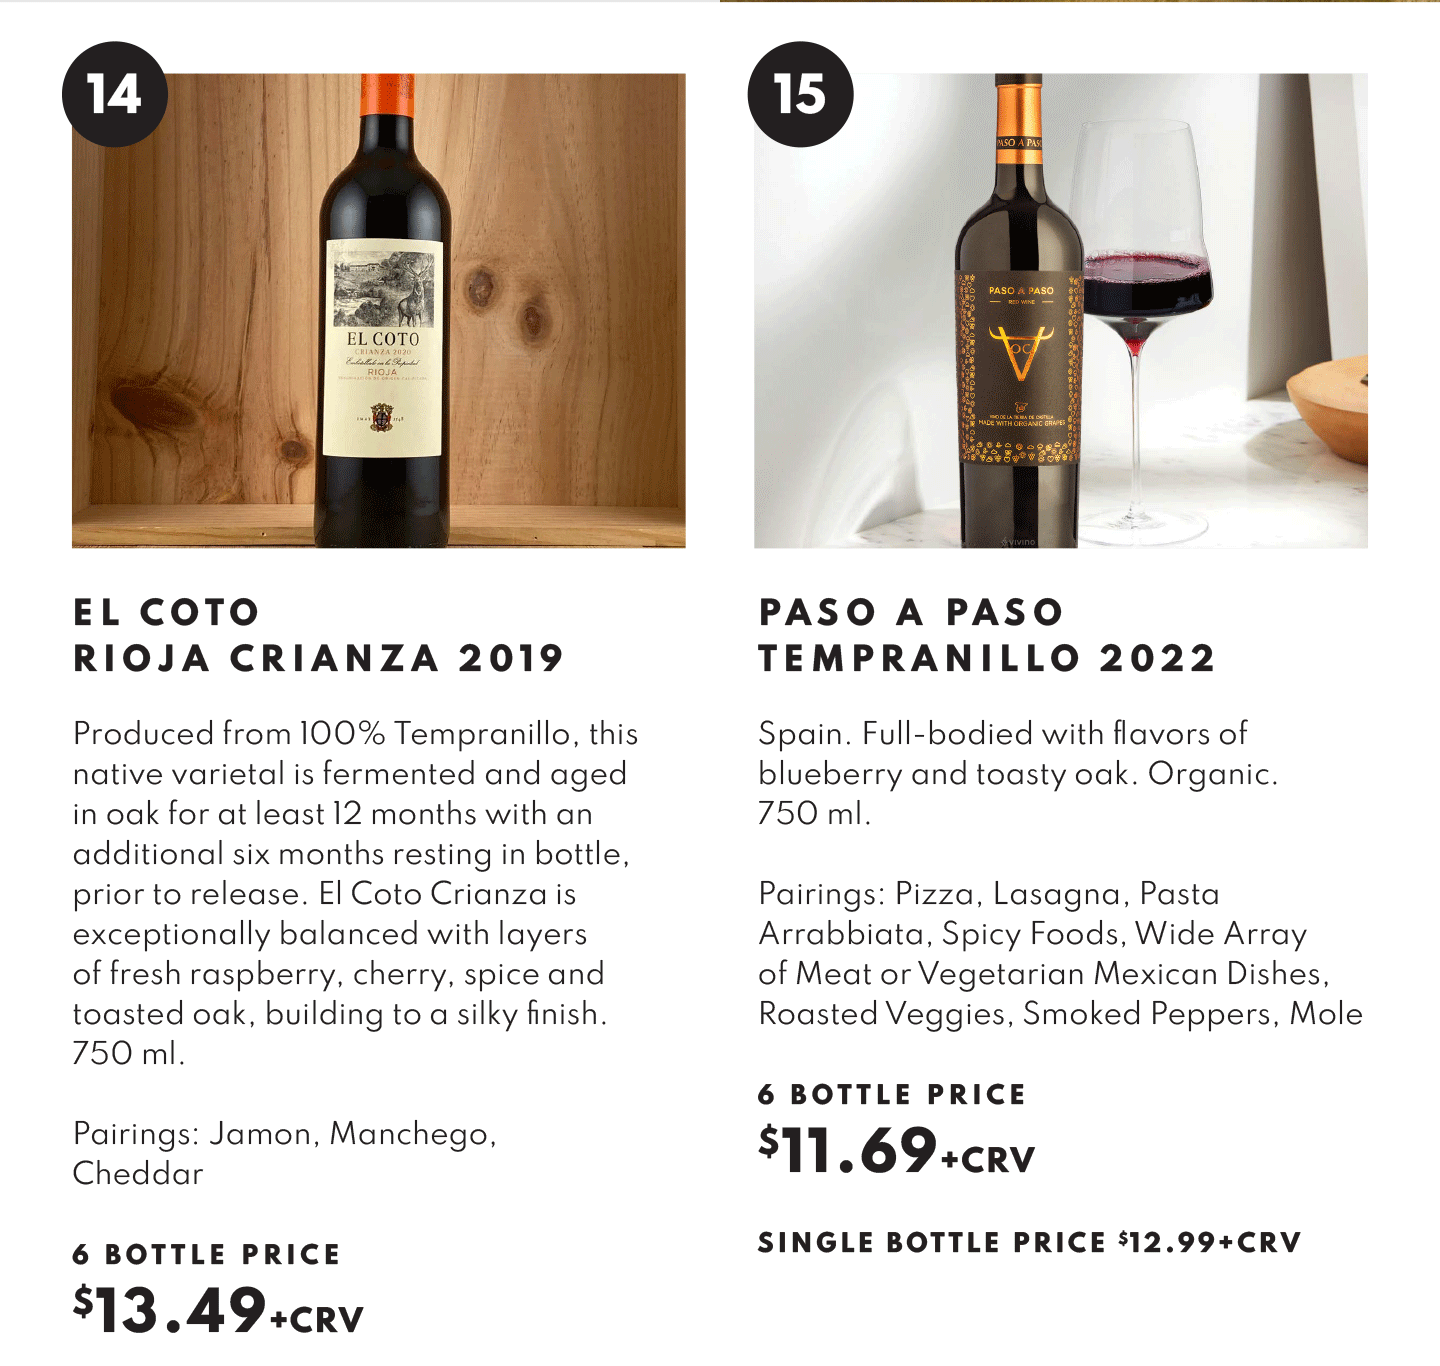 El Coto Rioja Crianza 2019, $13.49 - 6 botlte price and Paso A Paso Tempranillo 2022 6 Bottle price $11.69